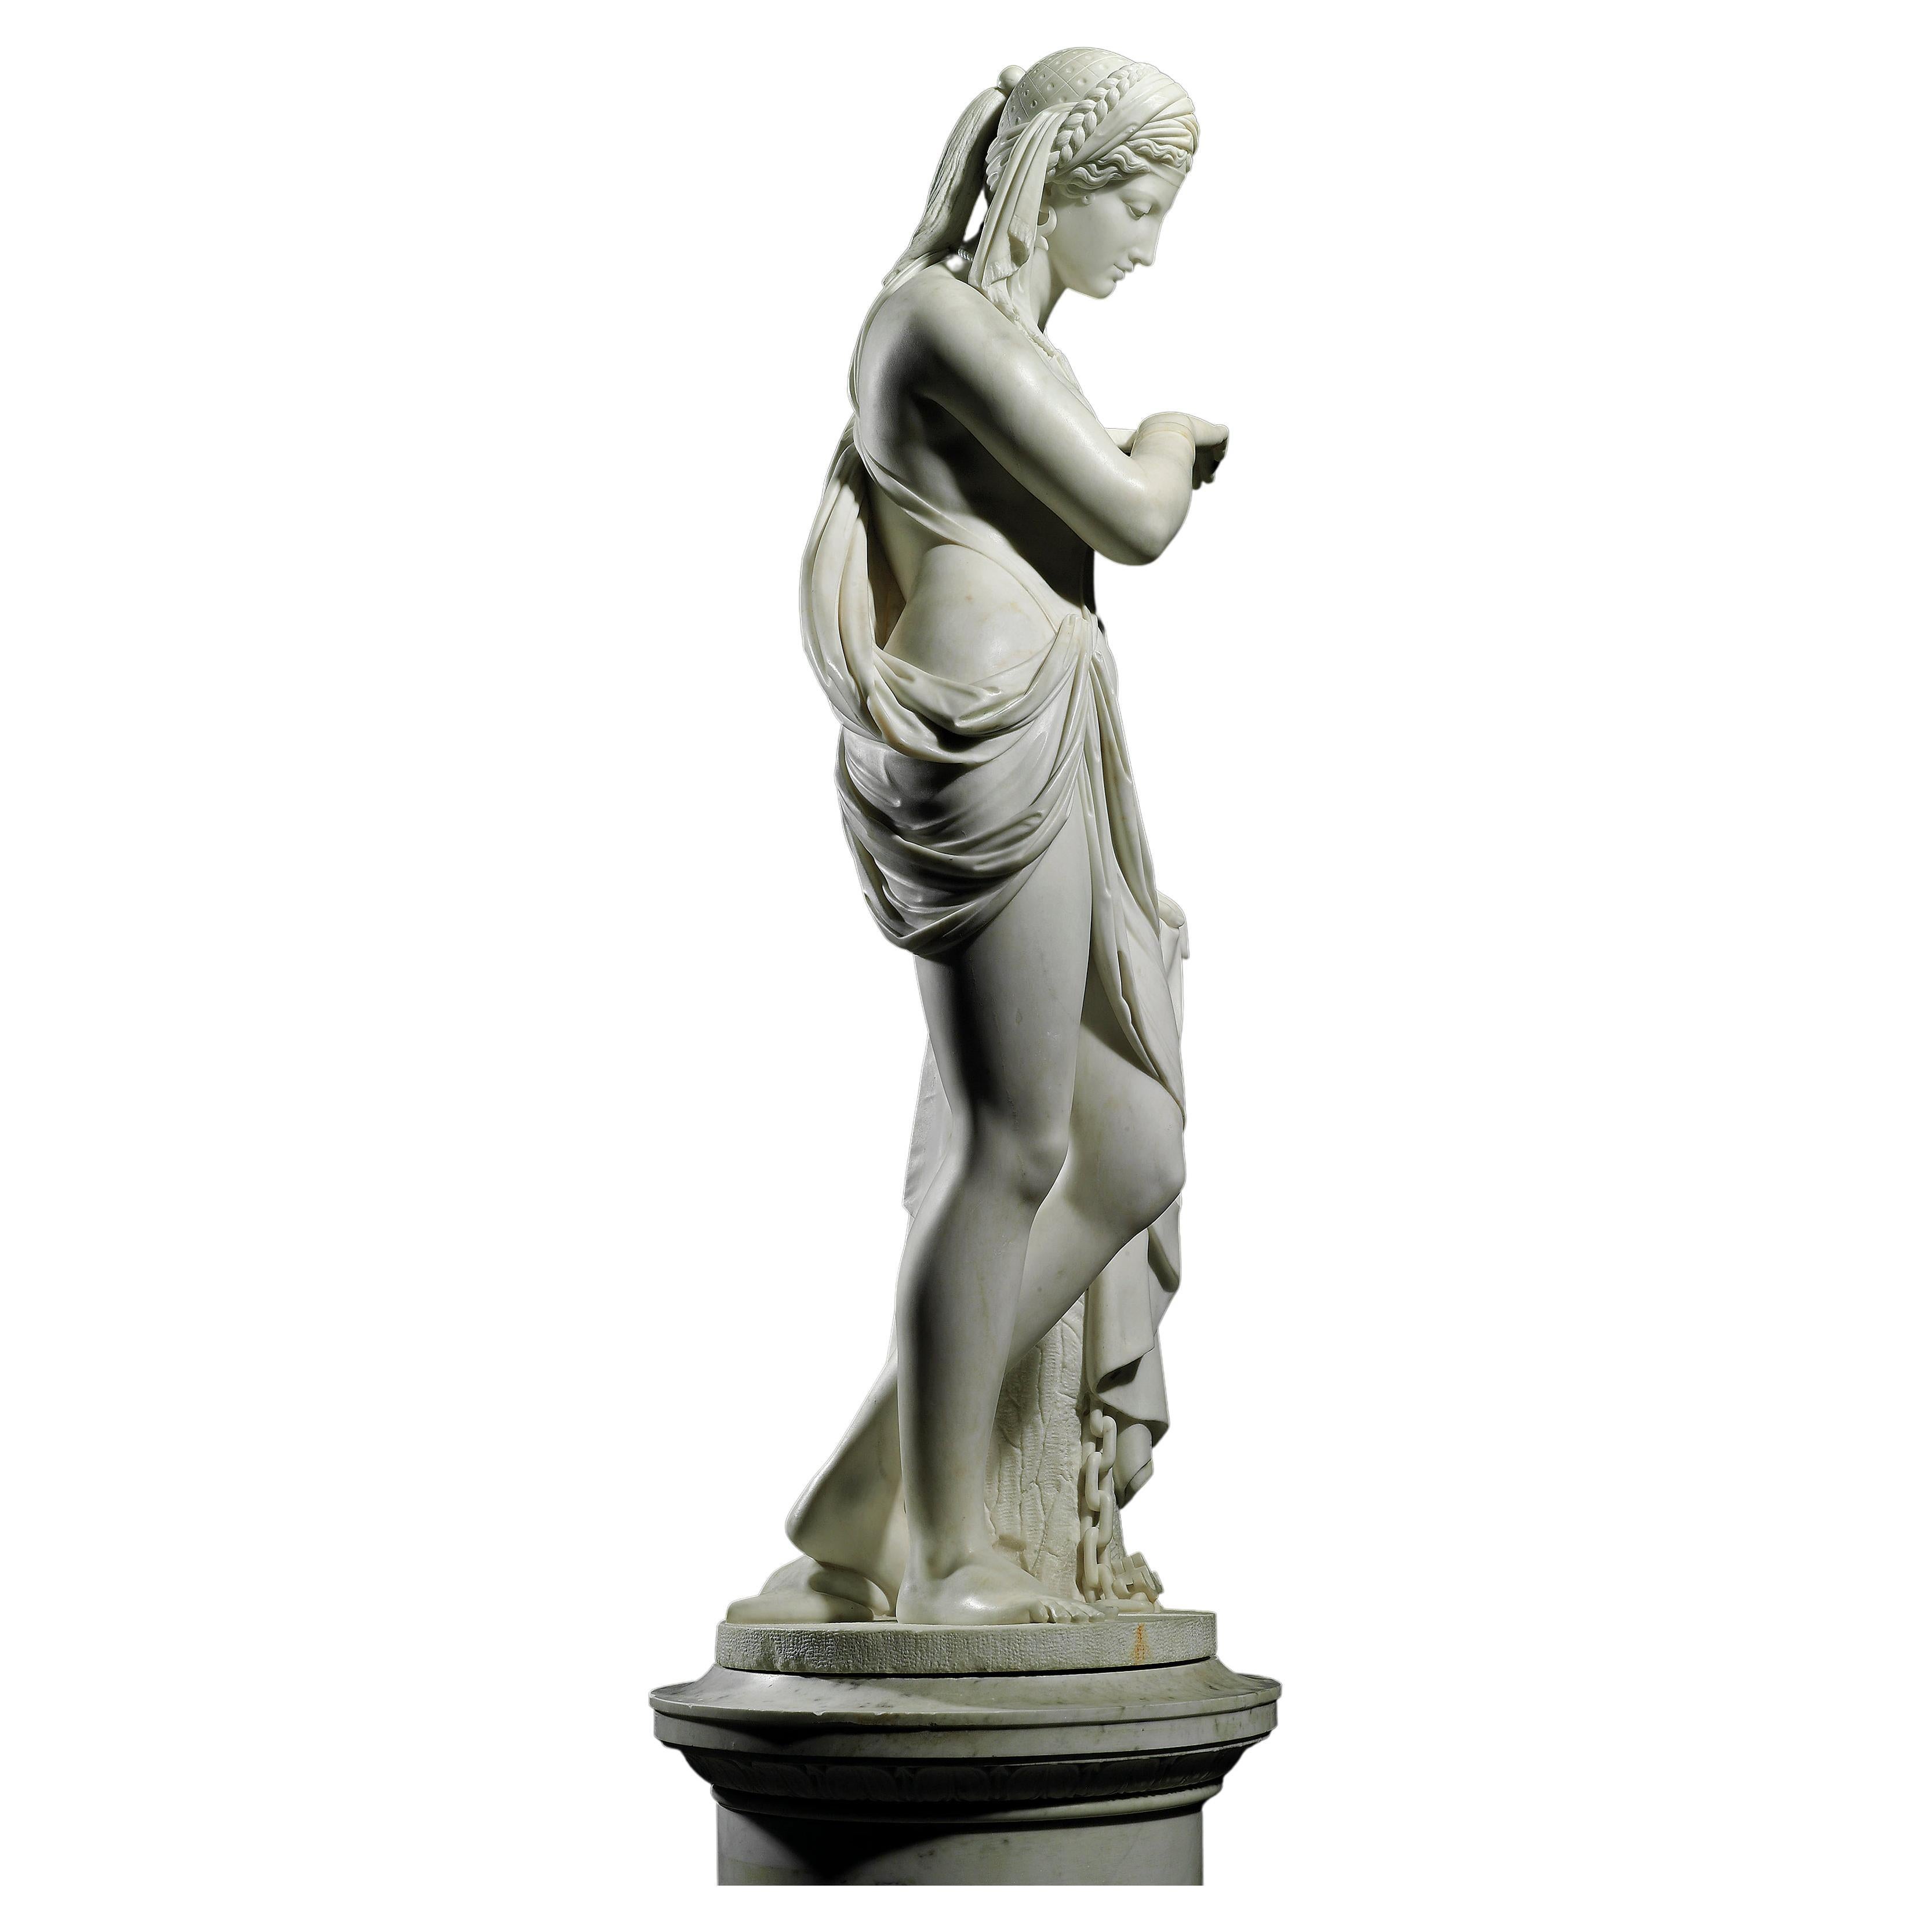 Scipione Tadolini war ein geschickter Bildhauer, dessen breites Talent von der Neoklassik bis zur Romantik reichte. Seine Vorfahren, die aus einer römischen Bildhauerdynastie stammten, übten einen tiefgreifenden und dauerhaften Einfluss auf die